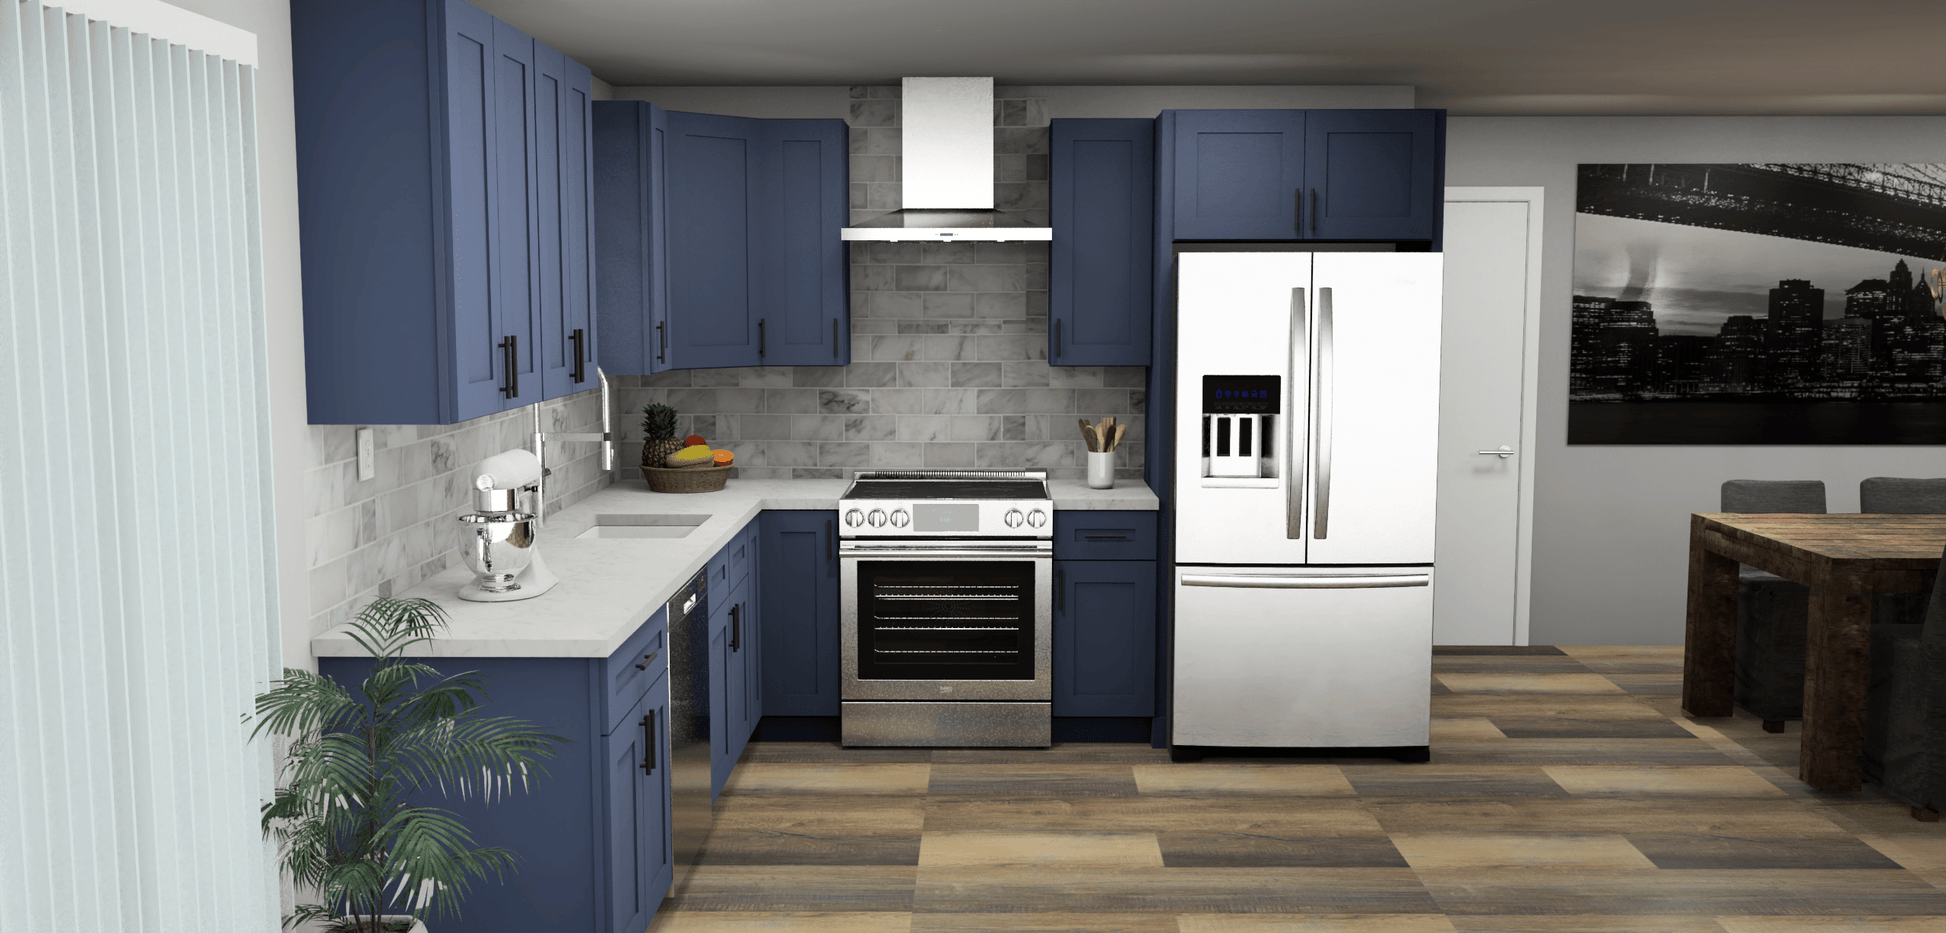 LessCare Danbury Blue 10 x 10 L Shaped Kitchen Front Layout Photo